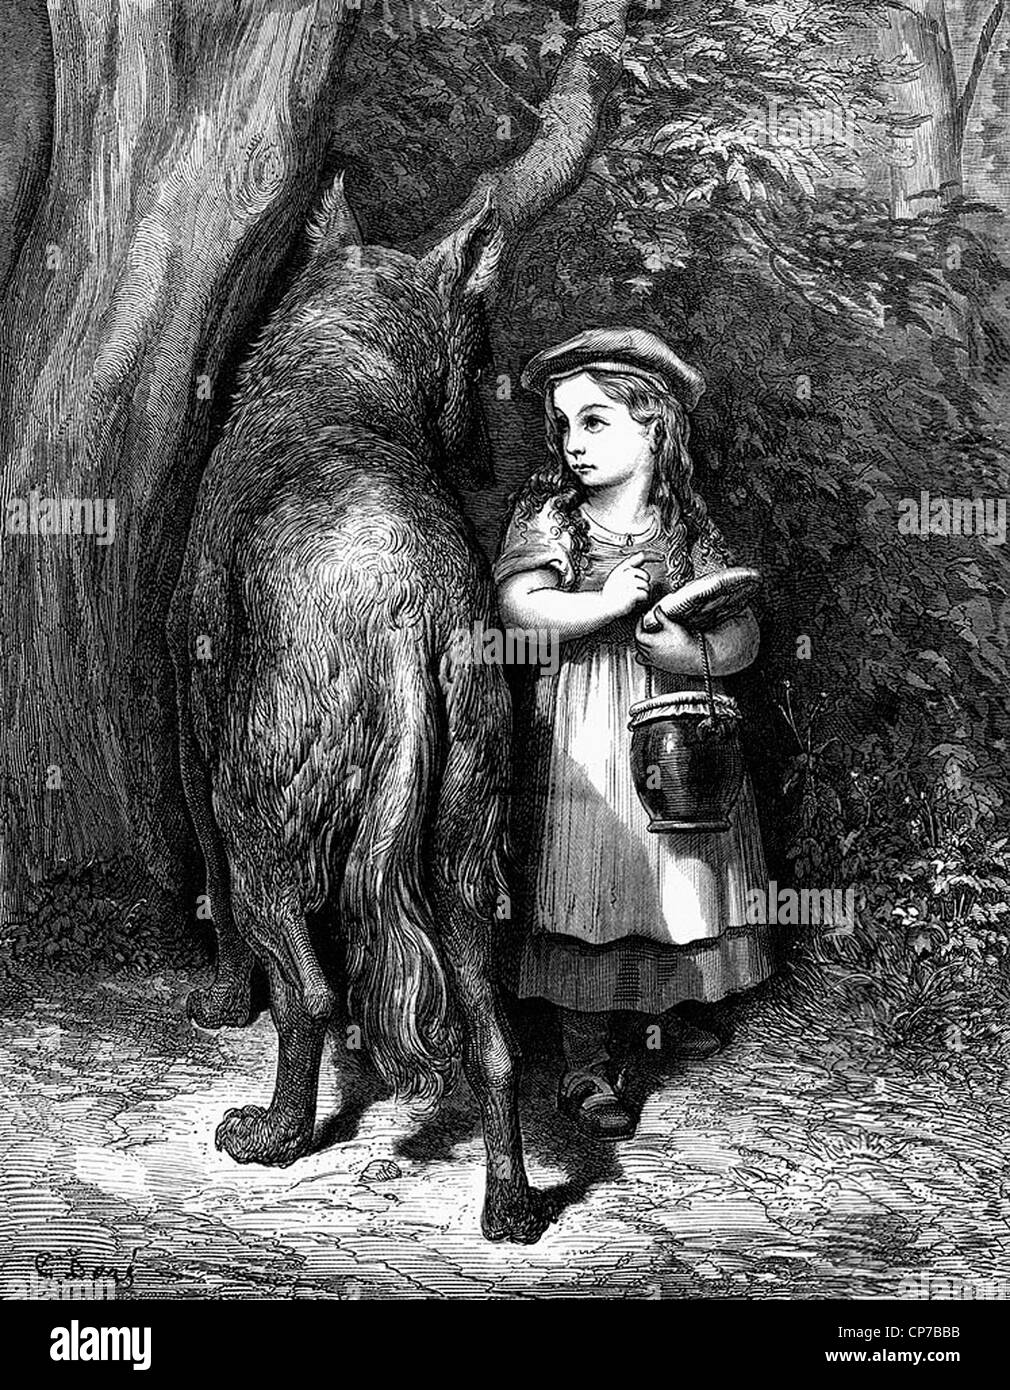 Holzschnitt-Gravur von Little Red Riding Hood im Wald mit bösen Wolf. Undatierte Originalgrafiken von Künstler Gustave Dore, 1832-1883. Stockfoto